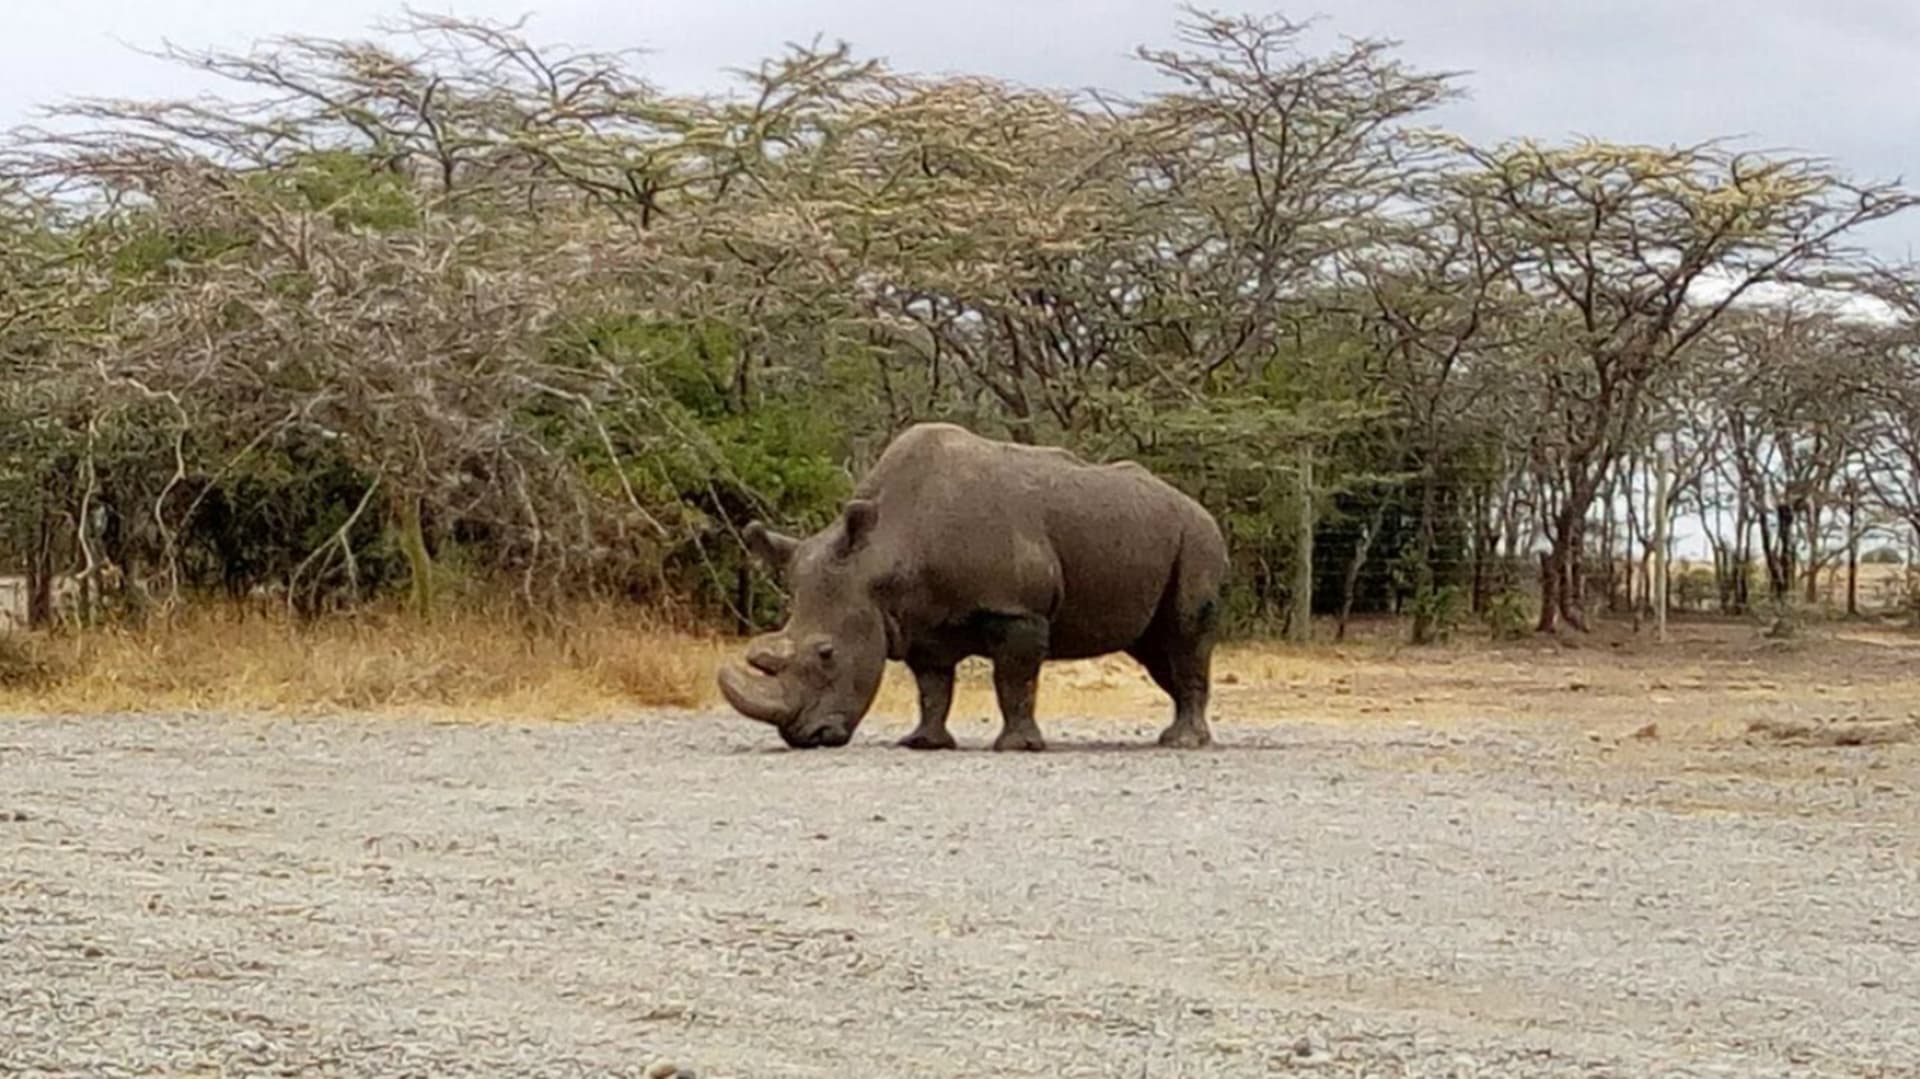 Nosorožec Sudán je posledním samcem svého druhu